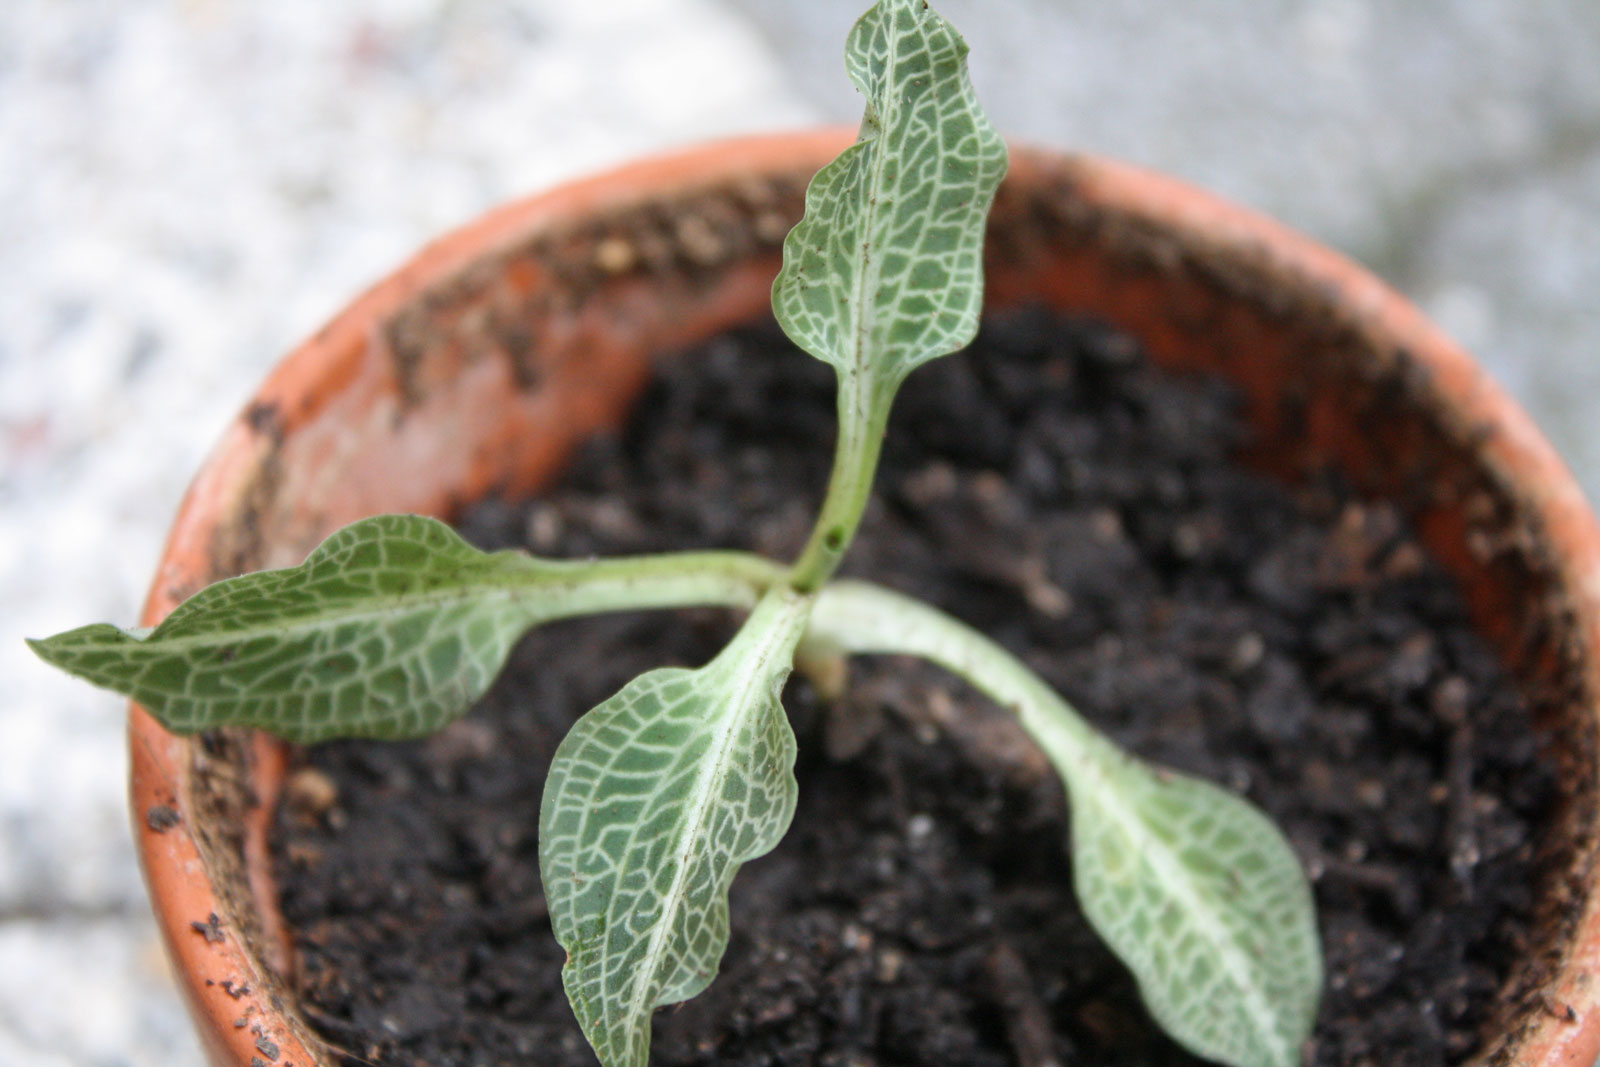 Goodyera pubescens